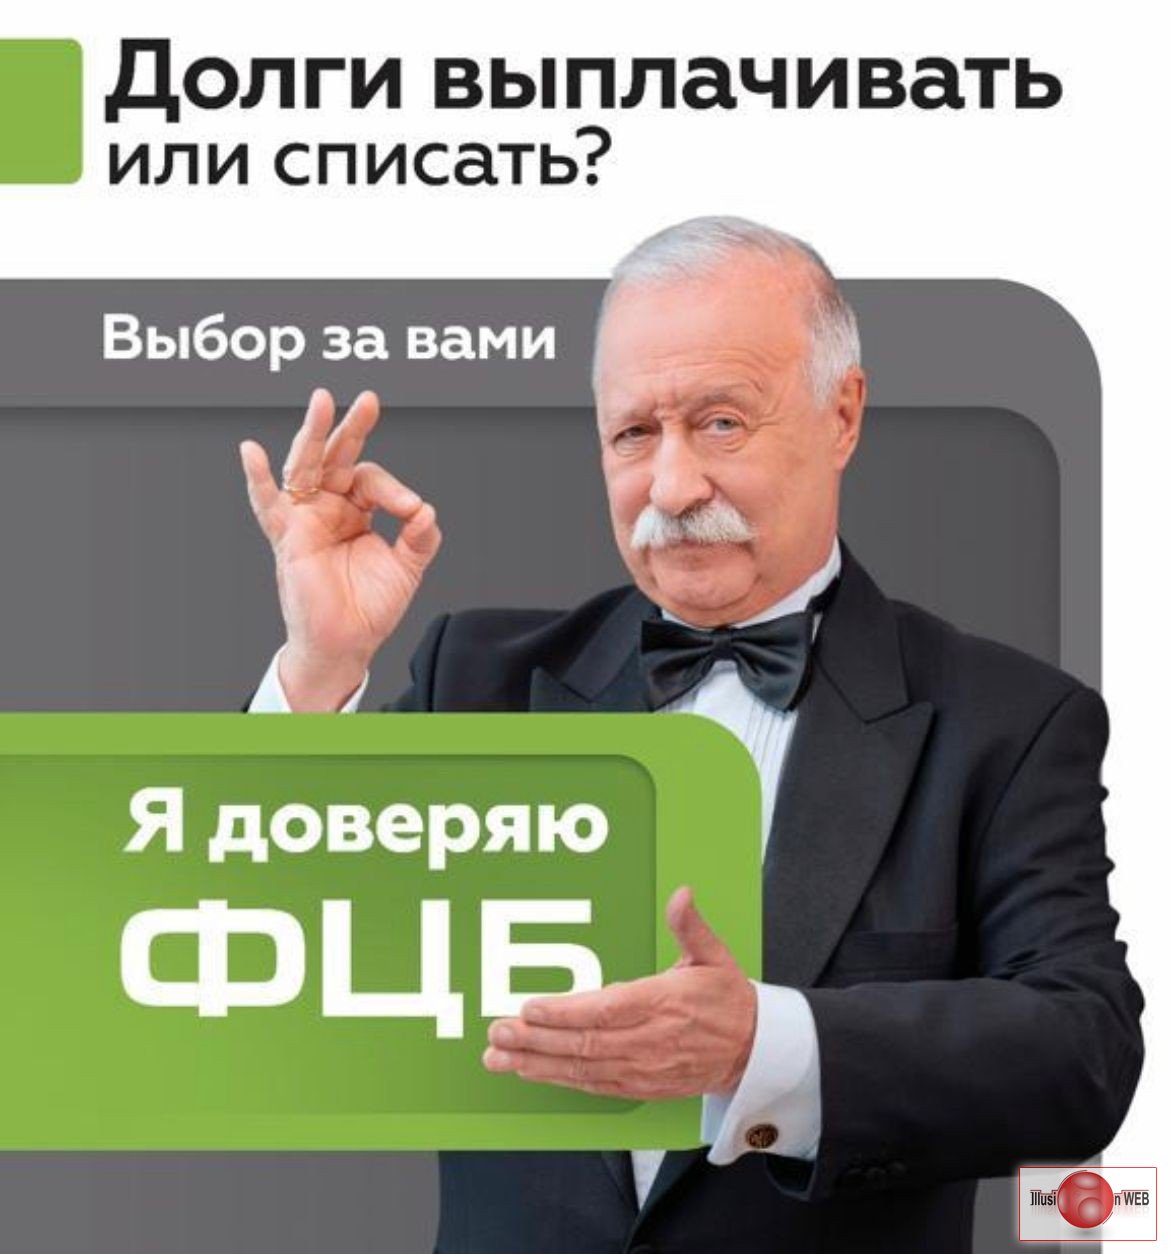 Списание всех долгов по кредитам в Ульяновске со 100% гарантией по договору